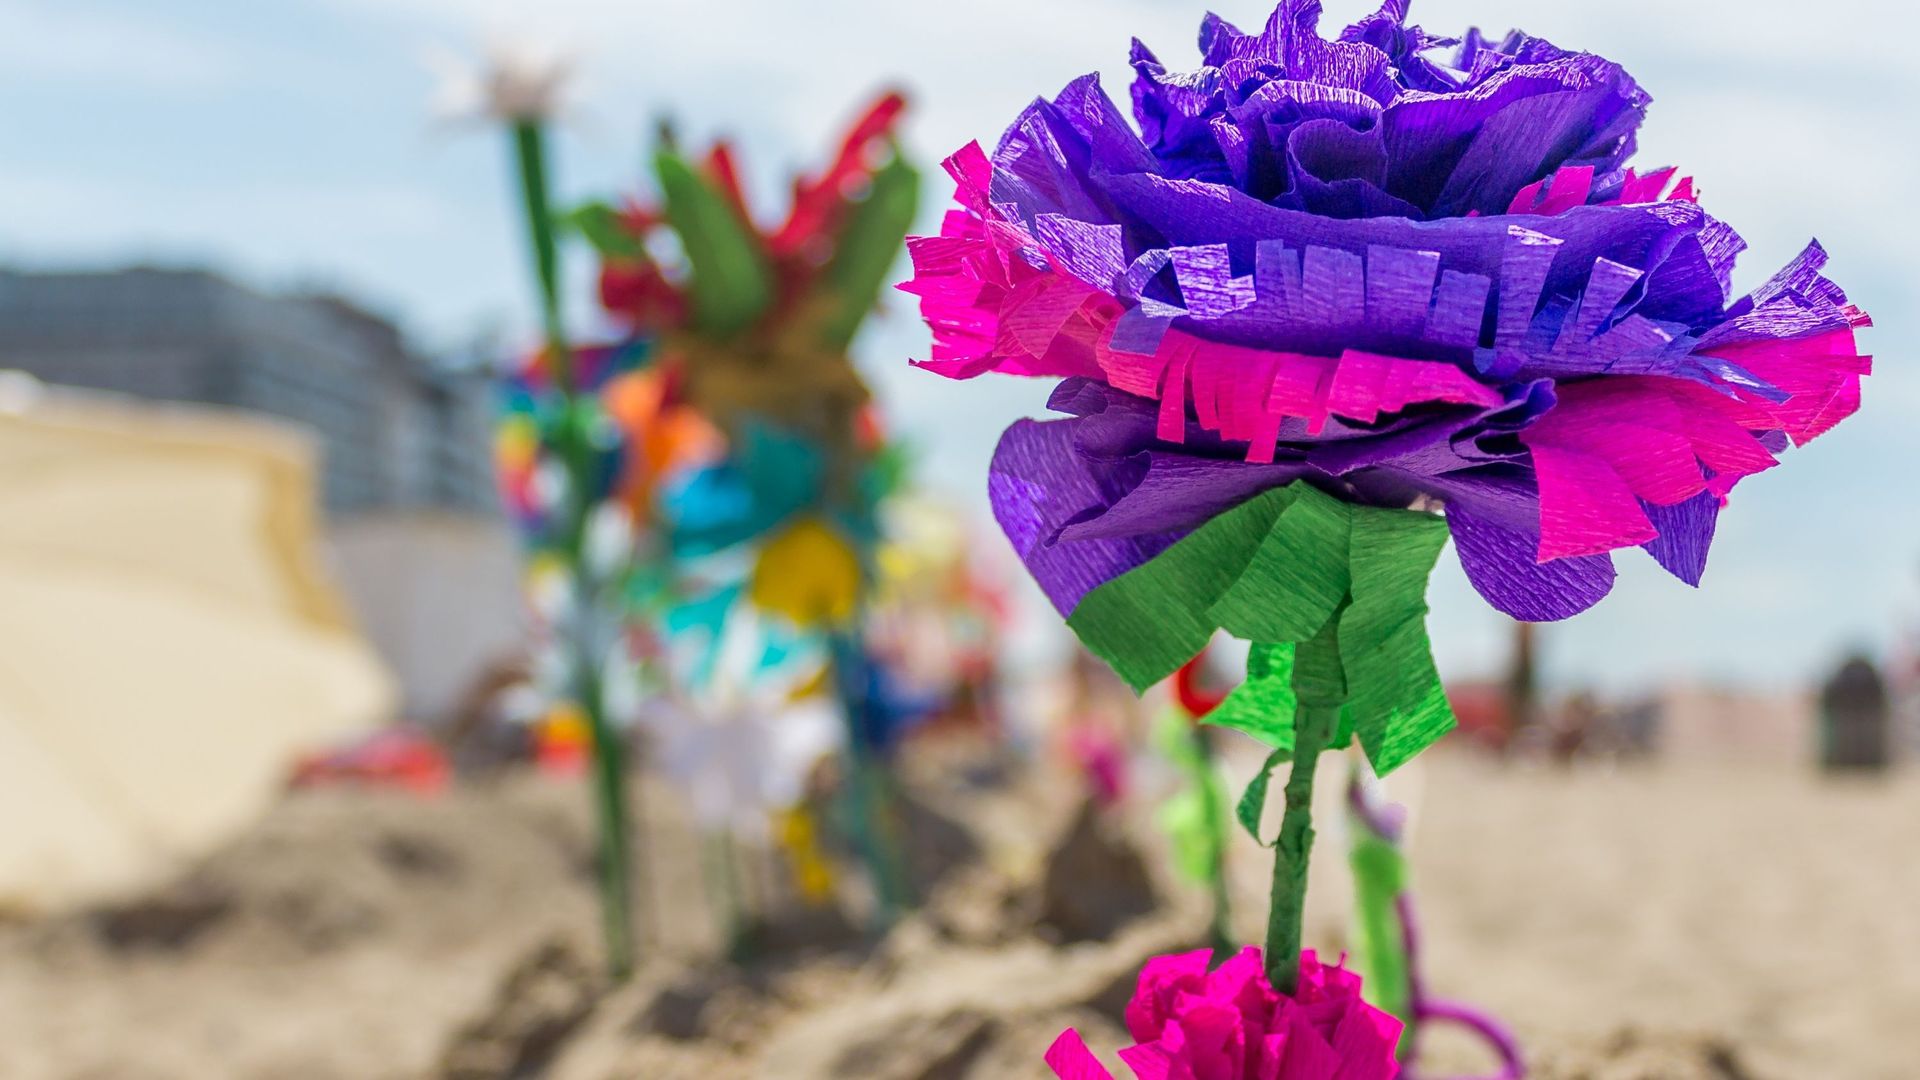 La Flandre reconnaît les "fleurs de plage" comme patrimoine immatériel